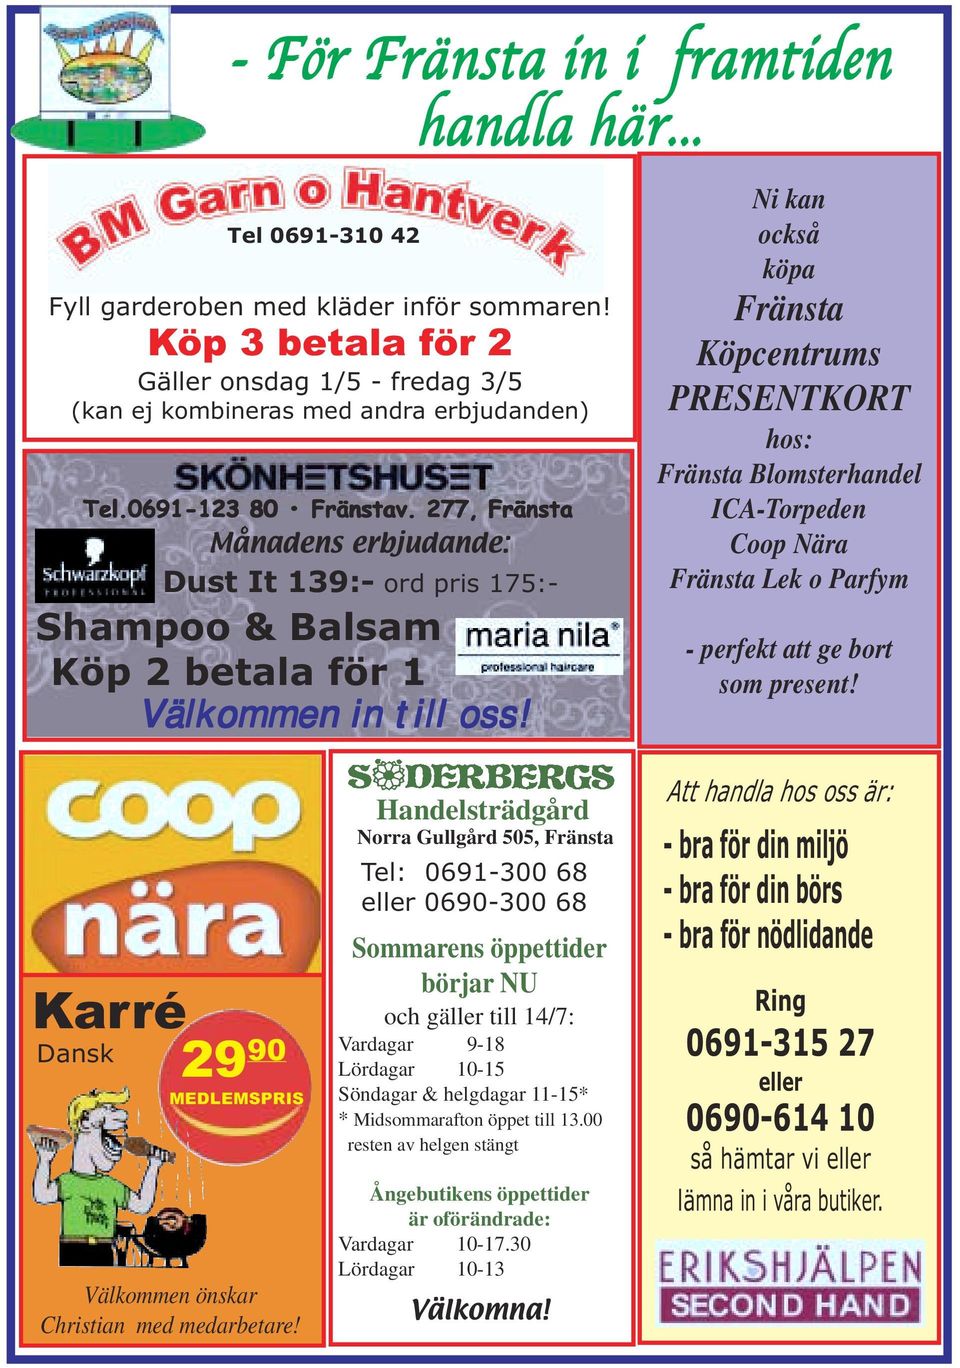 Ni kan också köpa Fränsta Köpcentrums PRESENTKORT hos: Fränsta Blomsterhandel ICA-Torpeden Coop Nära Fränsta Lek o Parfym - perfekt att ge bort som present!